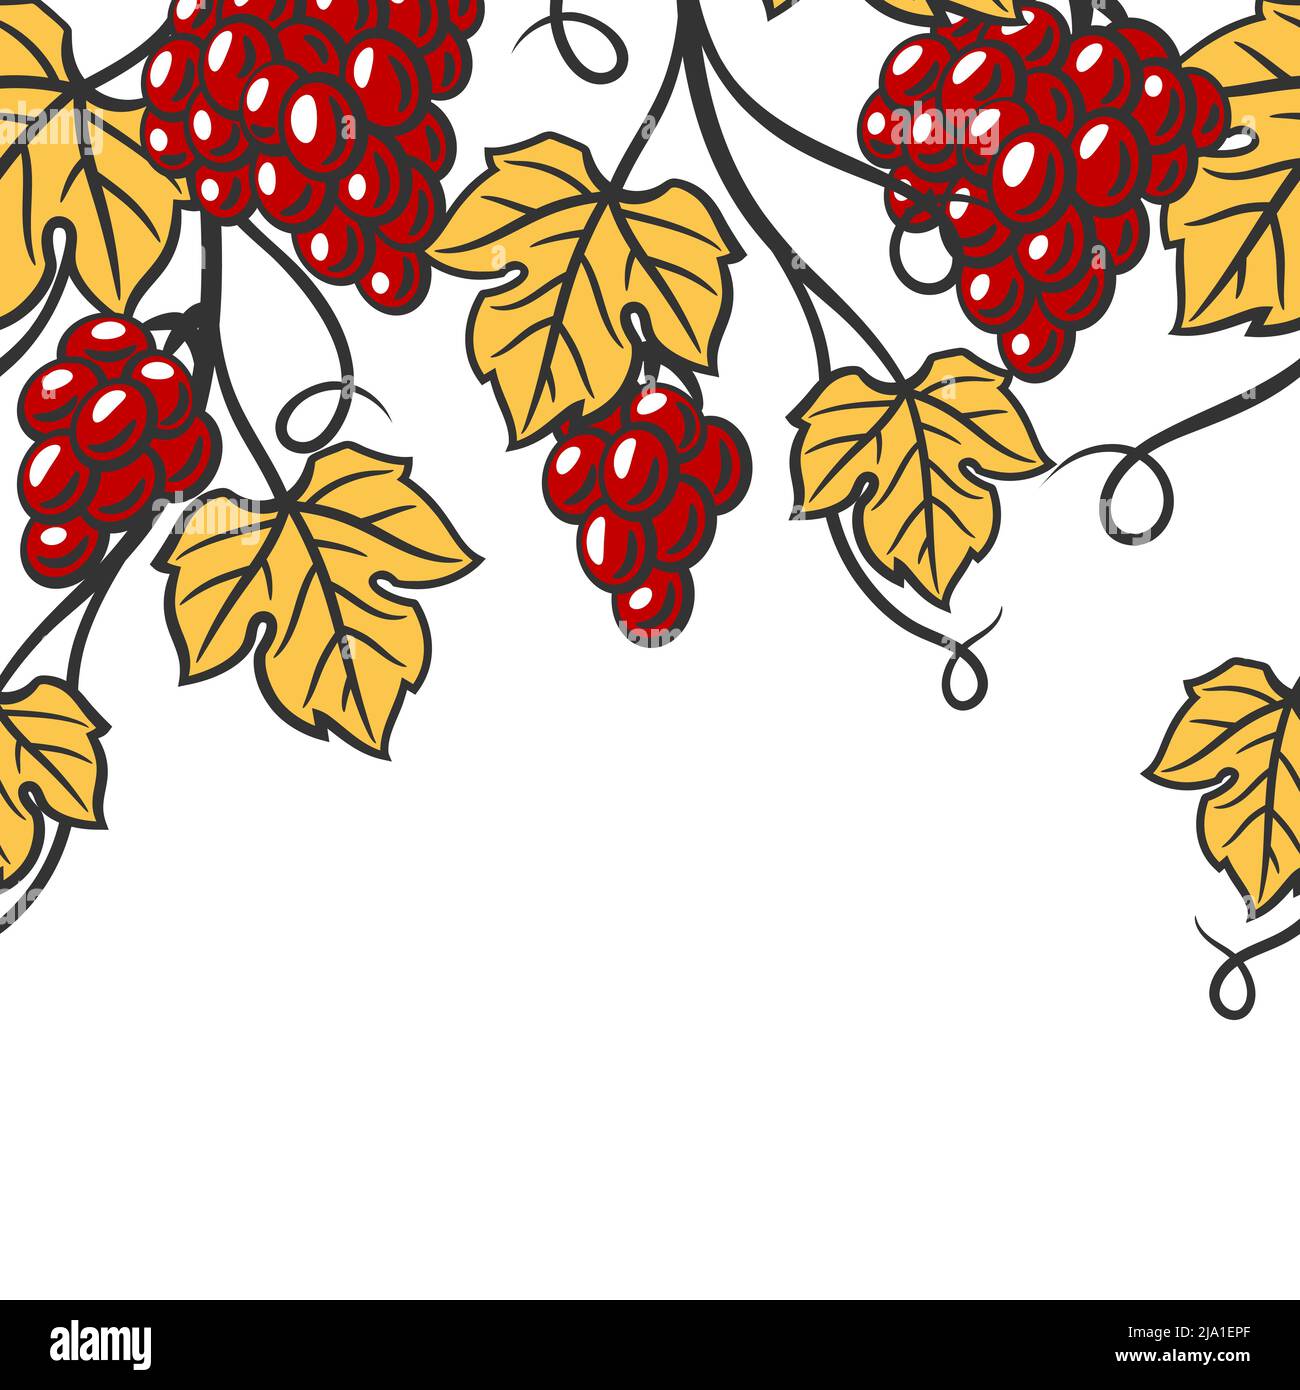 Nahtloses Muster der Rebe mit Blättern und Trauben. Bild der Weinkellerei für Restaurants und Bars. Geschäfts- und Agrarartikel. Stock Vektor